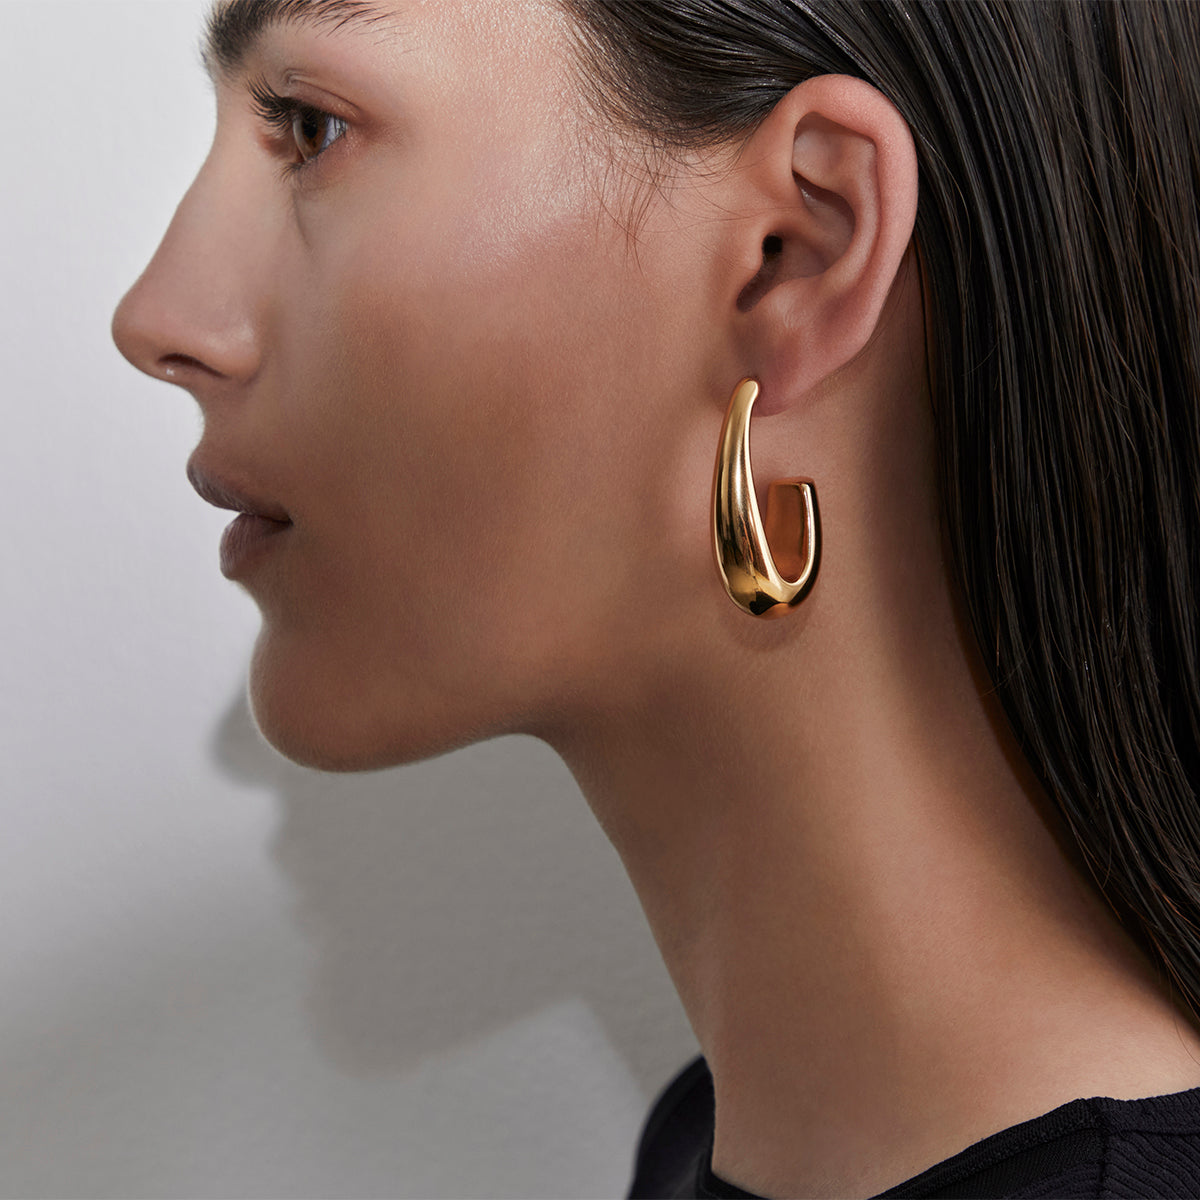 Blair-earrings-Amber-Sceats-2.jpg